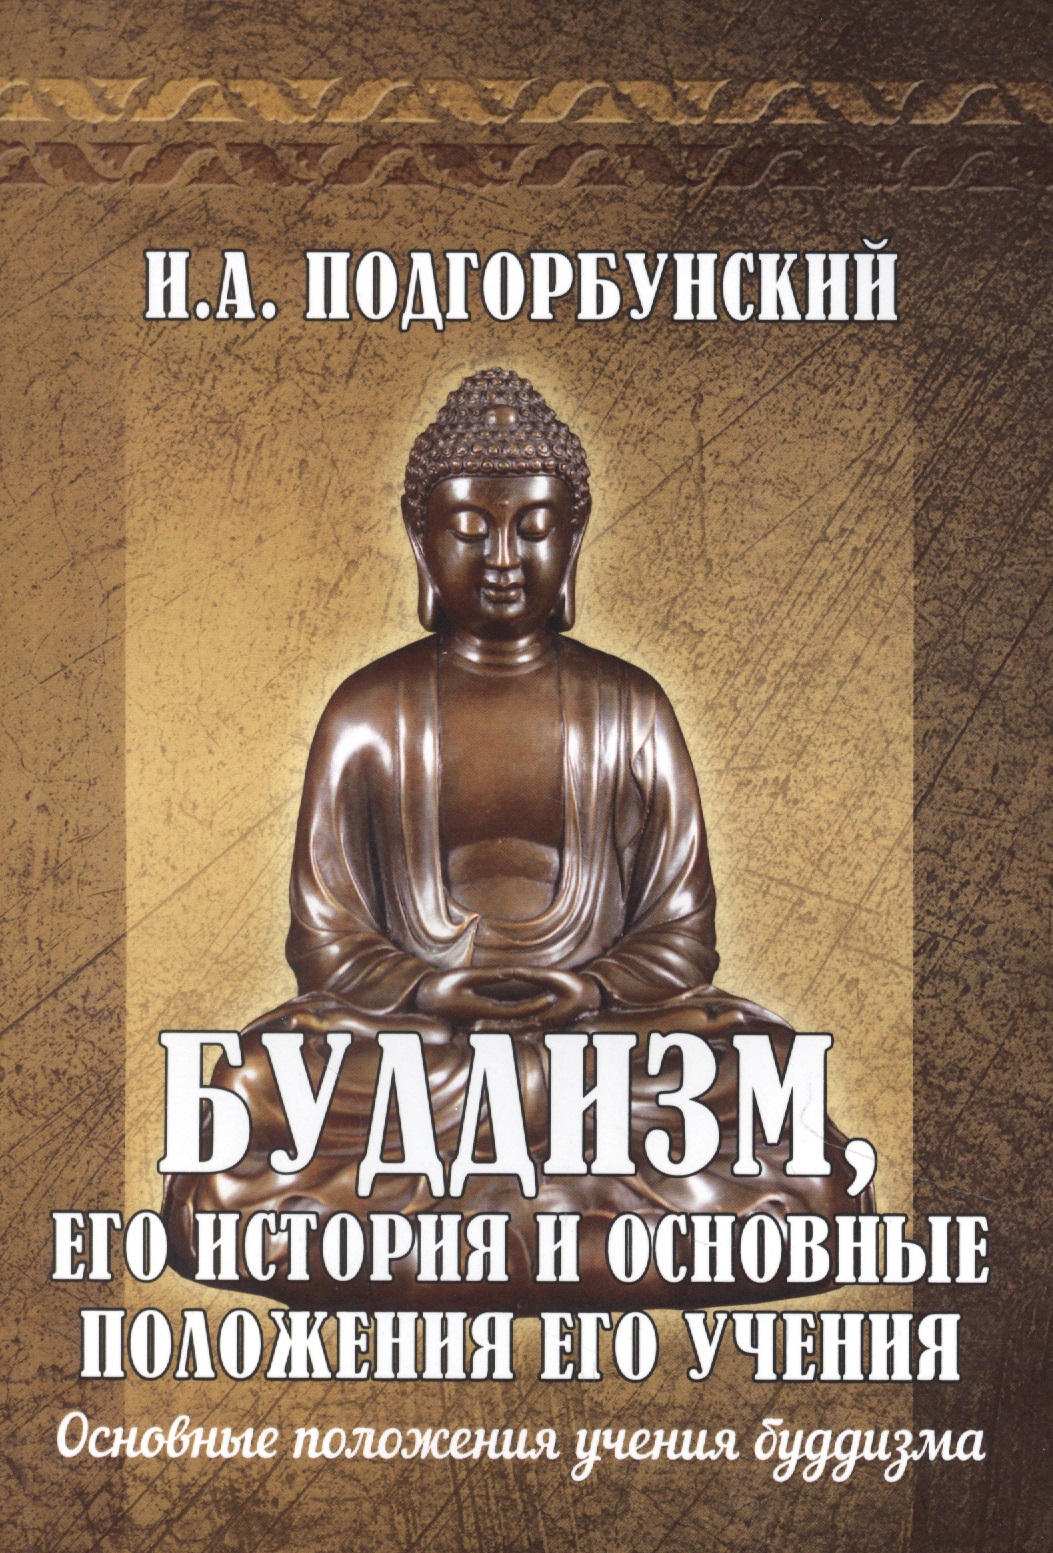 Буддизм, его история и основные положения его учения. Том 2. Основные положения учения буддизма дао история и учения